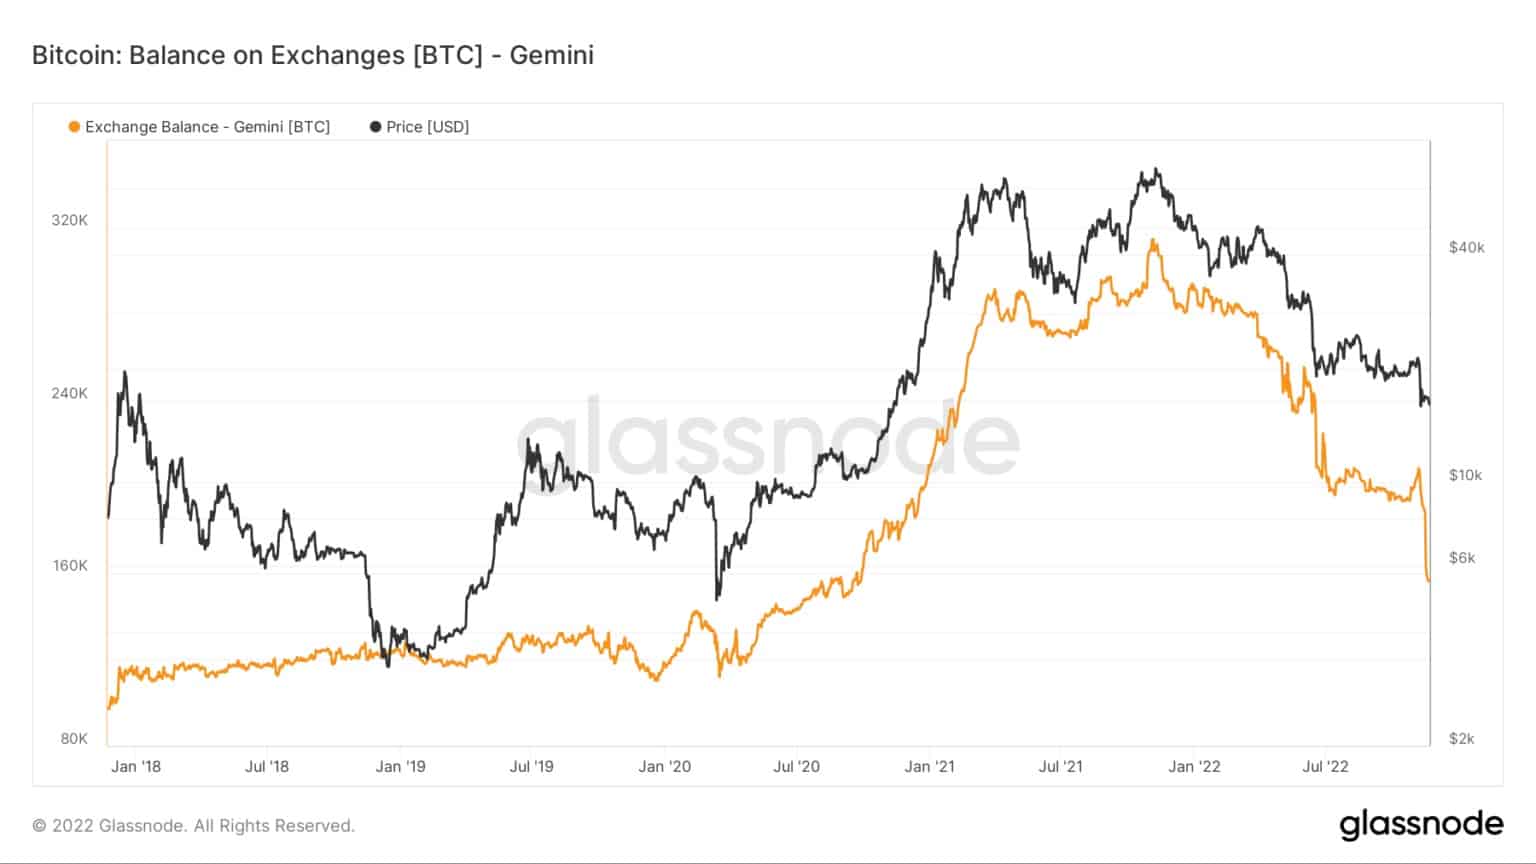 Graphique montrant les soldes de Bitcoin sur l'échange Gemini de 2016 à 2022 (Source : Glassnode)